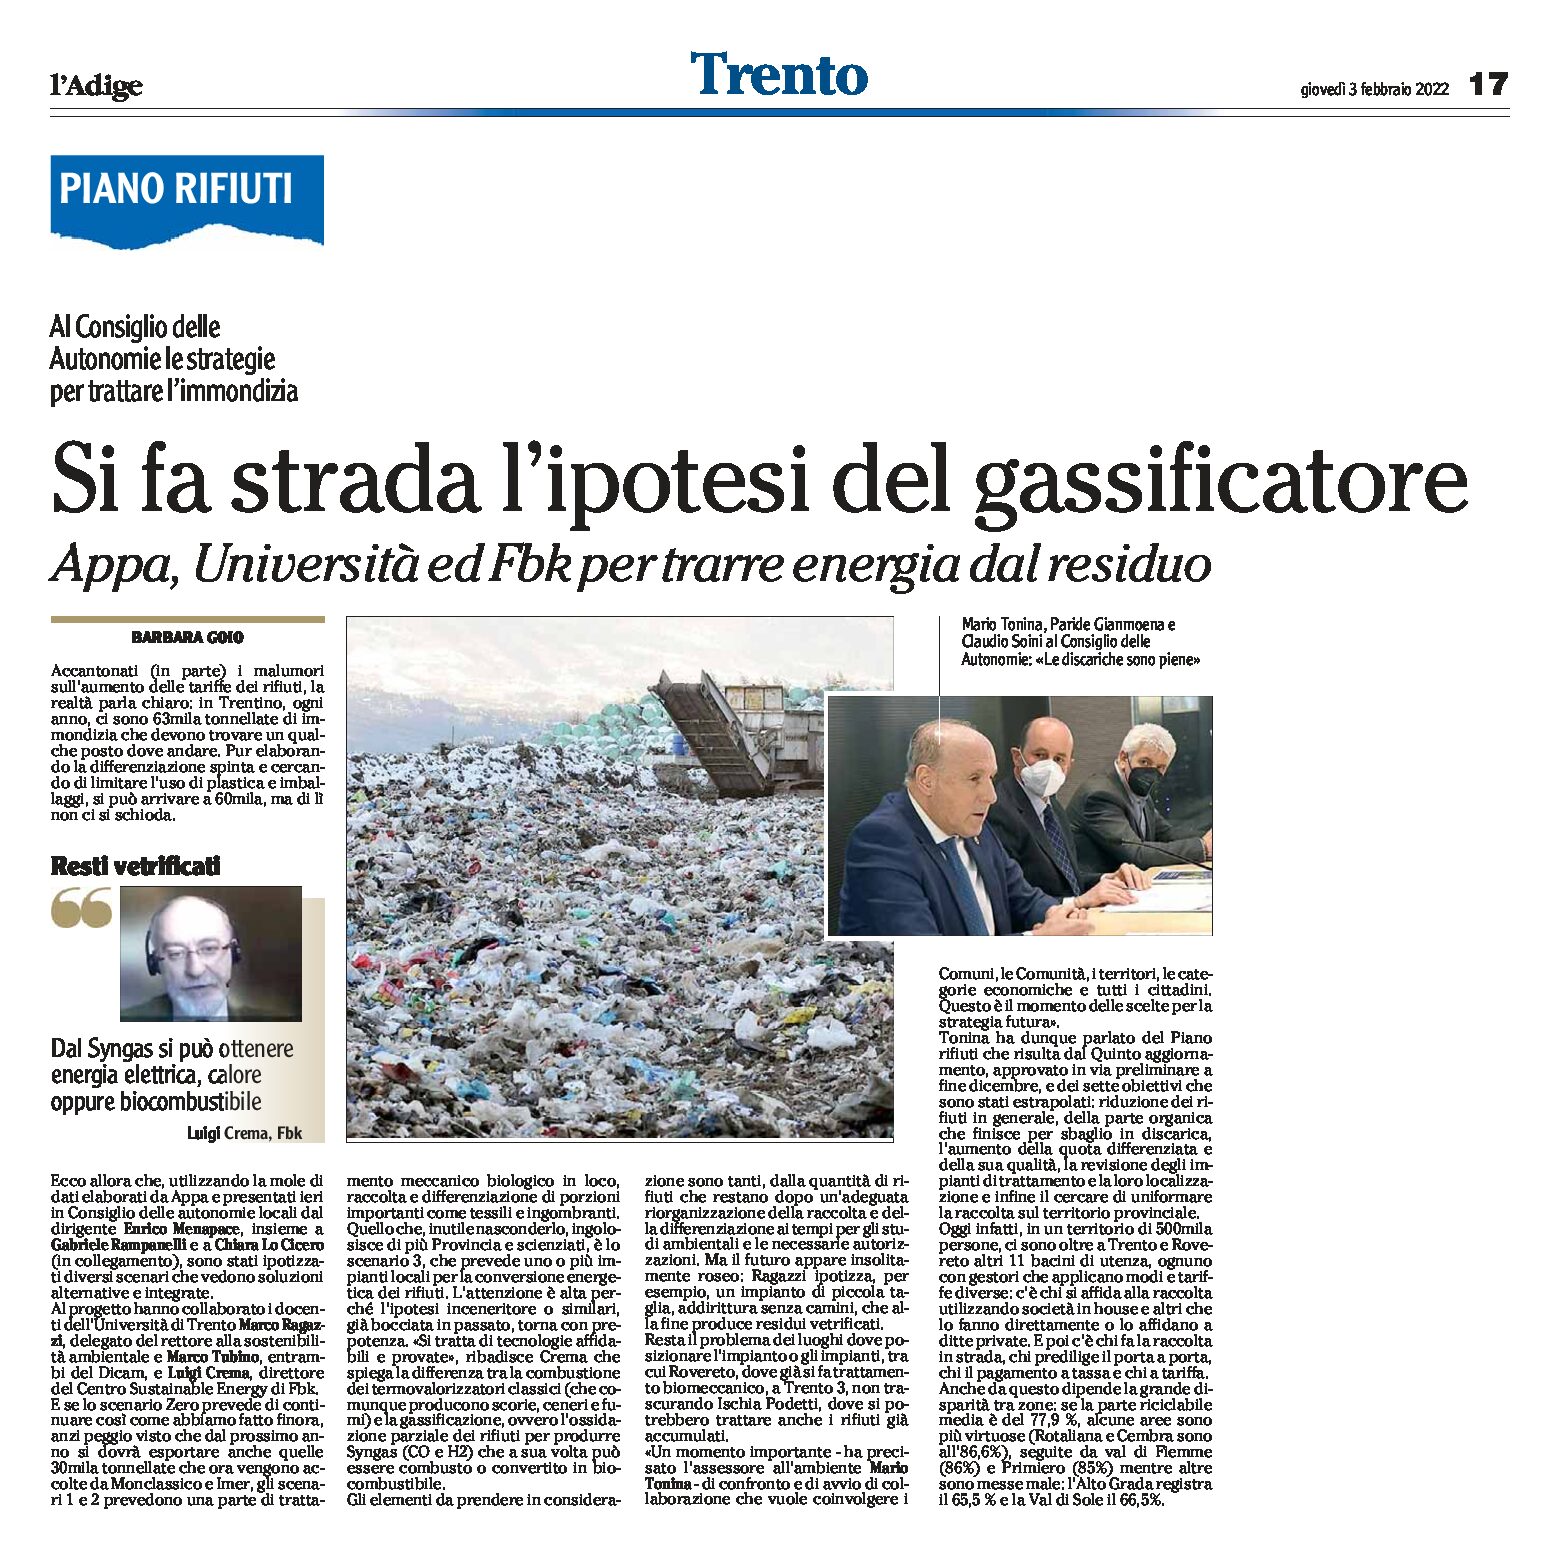 Piano rifiuti, Trentino: si fa strada l’ipotesi del gassificatore